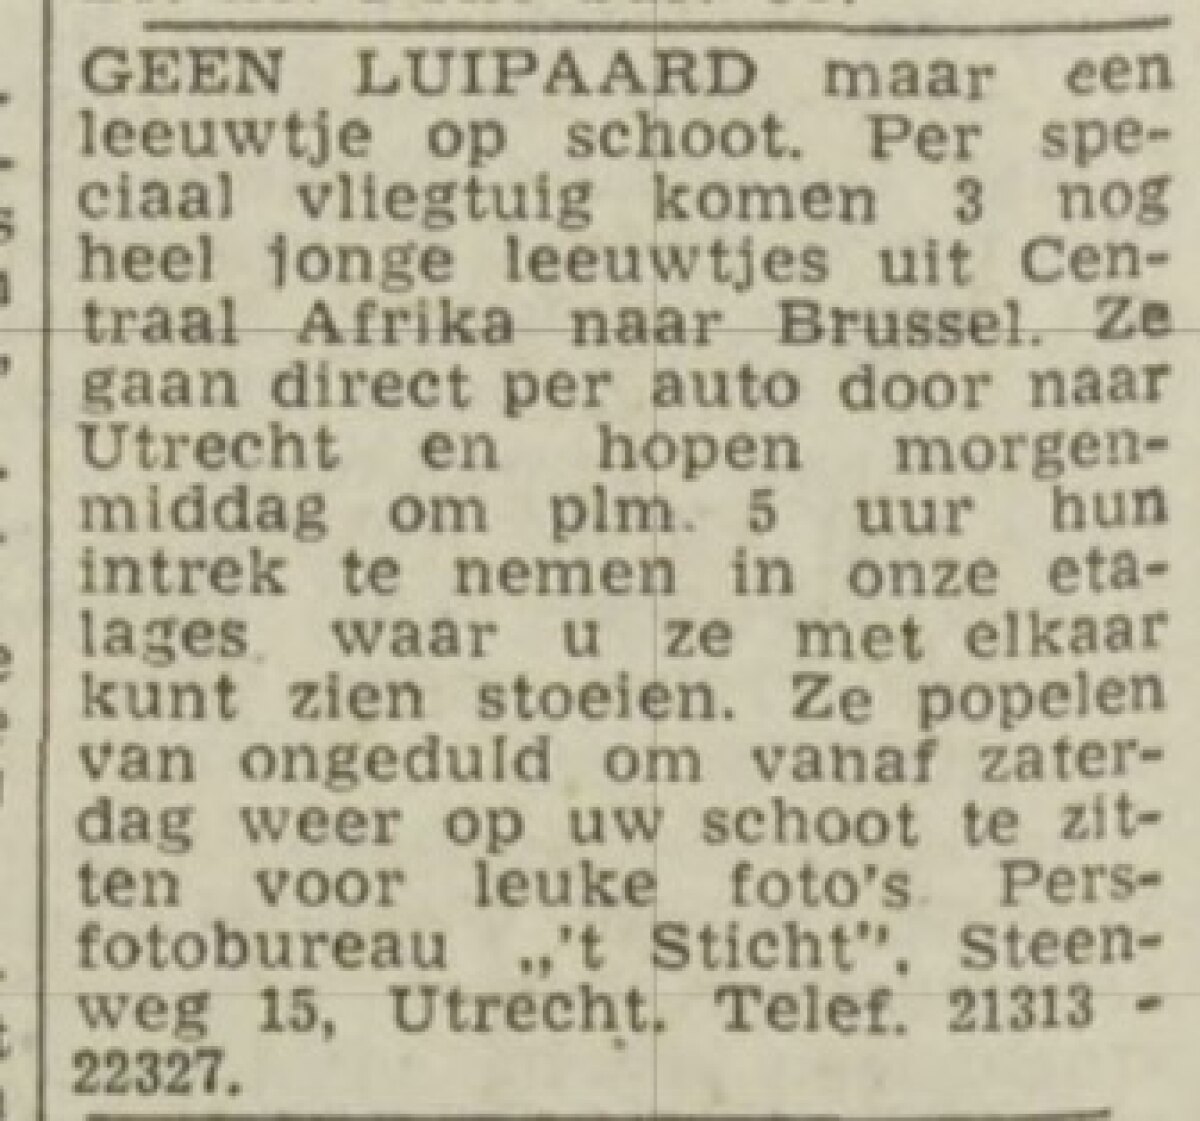 Utrechts Nieuwsblad, 11-2-1960